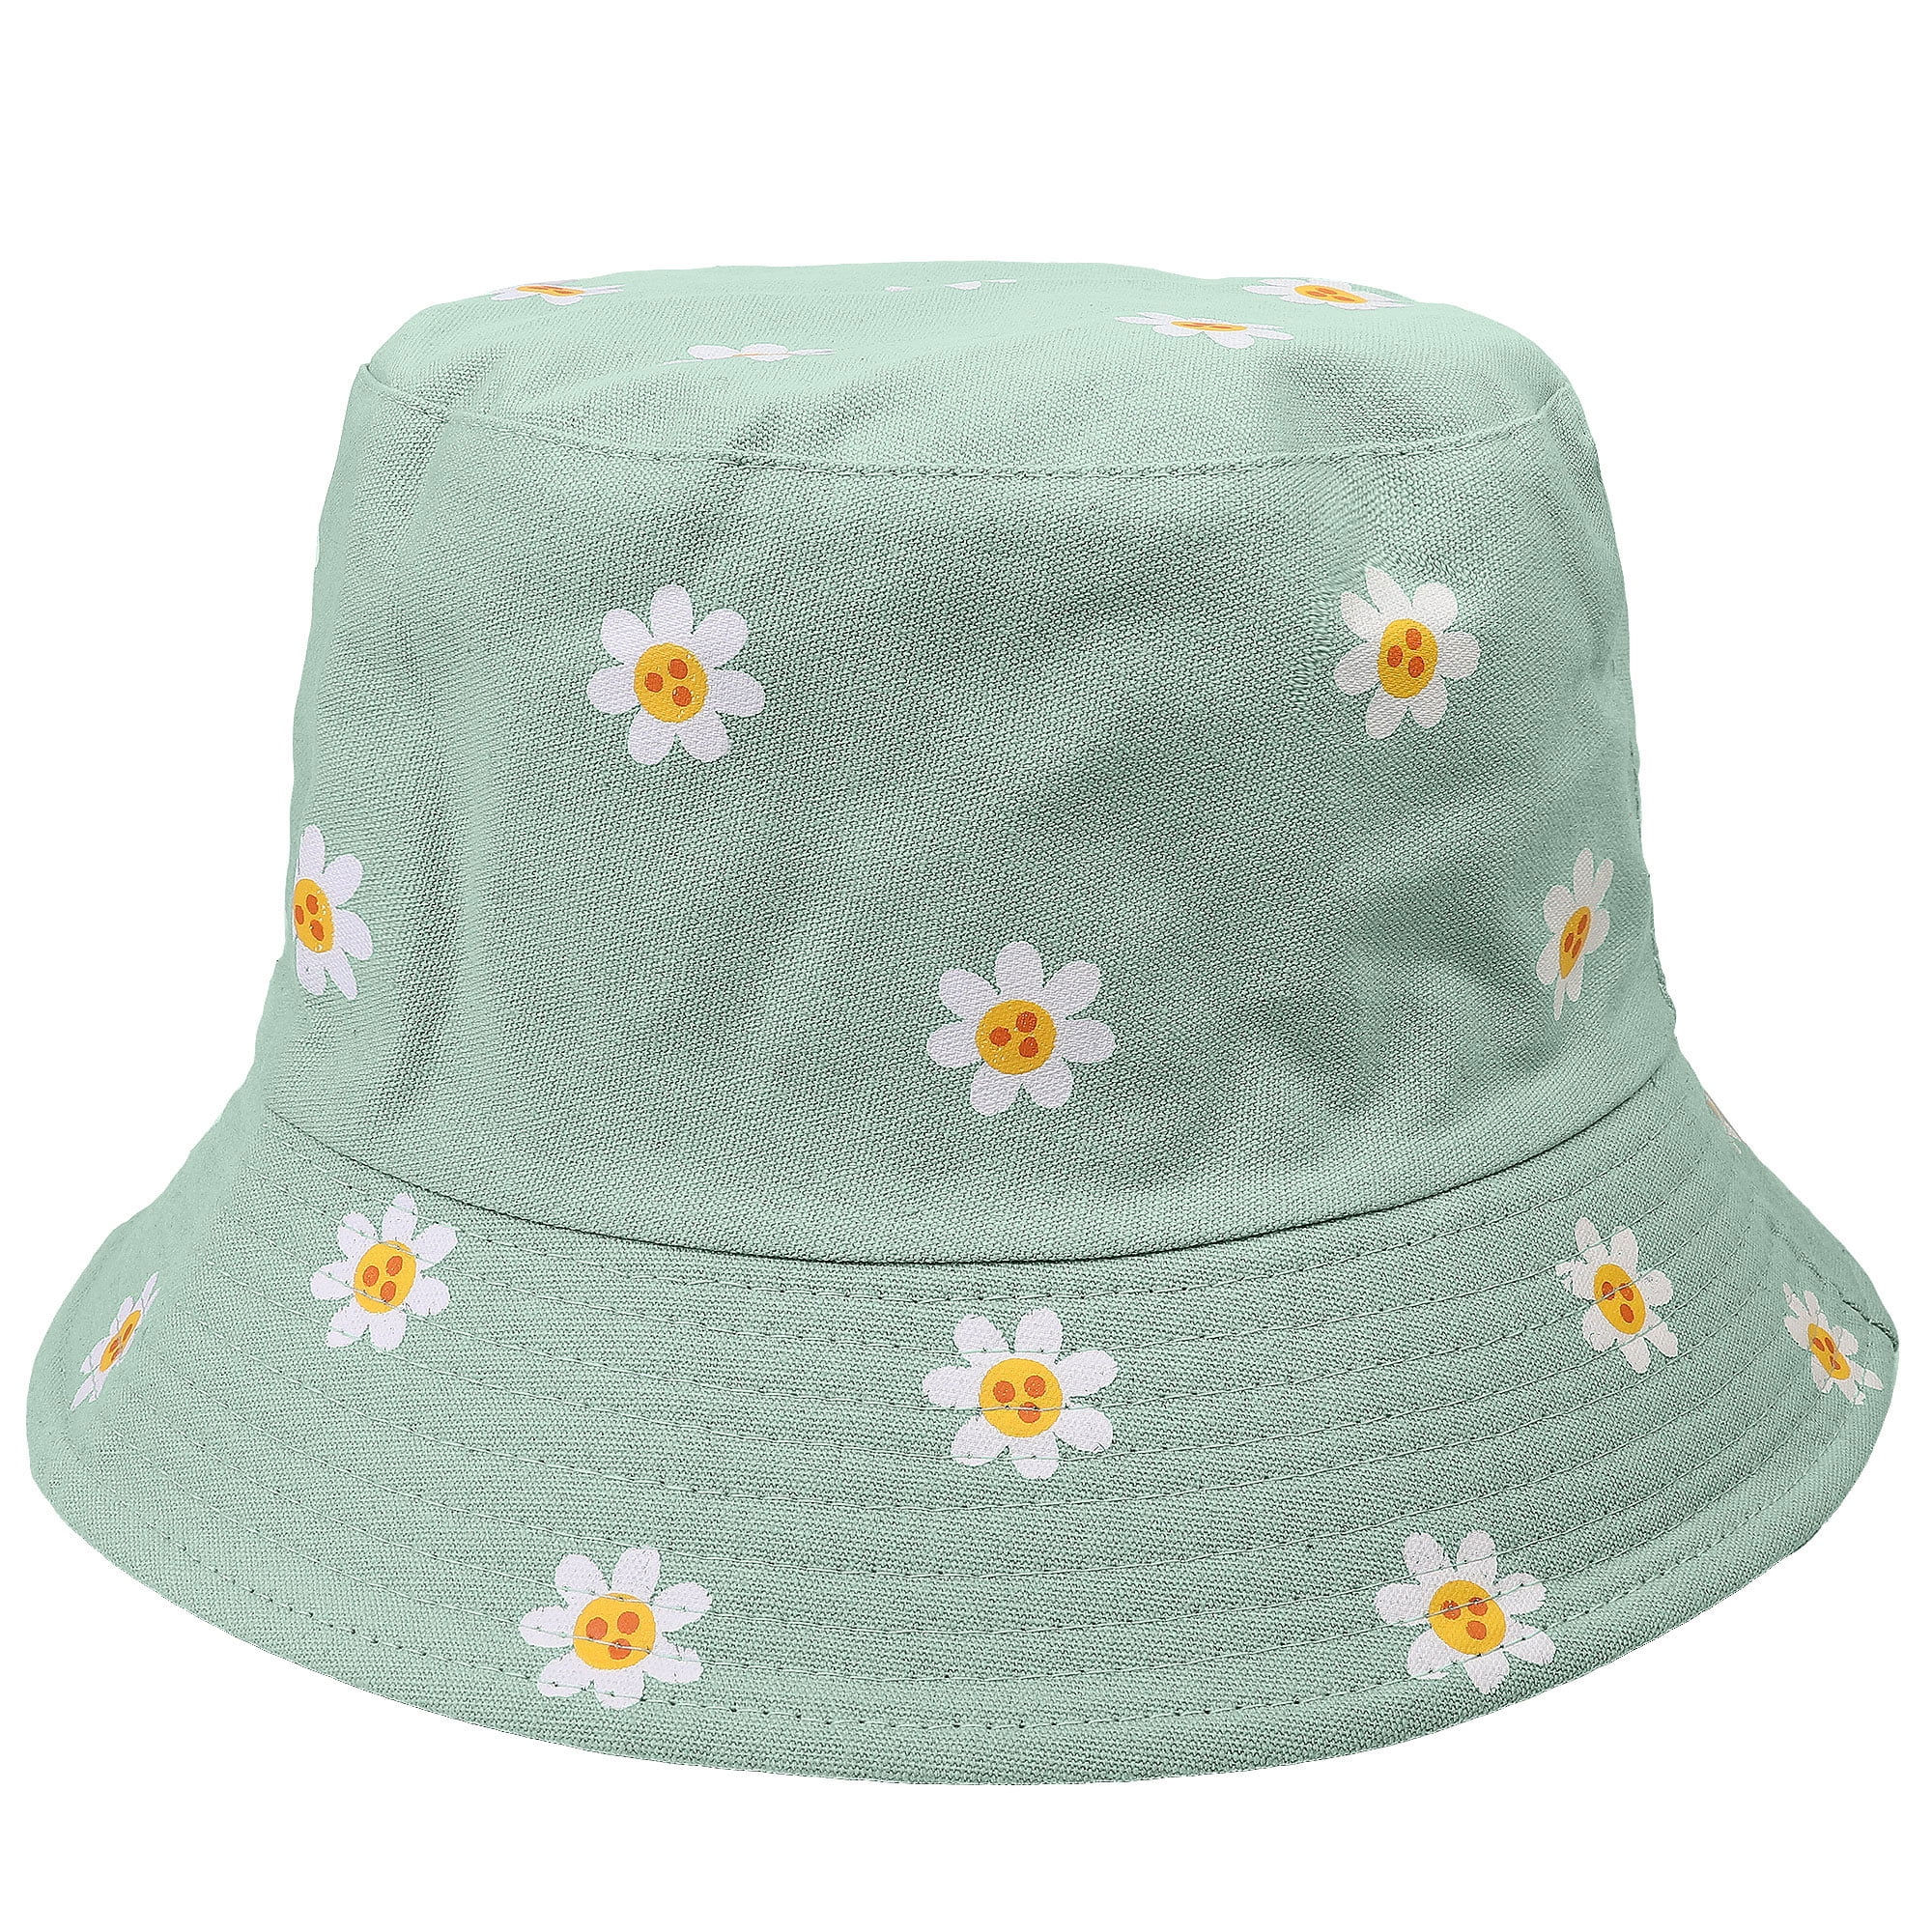 Reversible Bucket Hat For Men Women Summer Travel Beach Outdoor